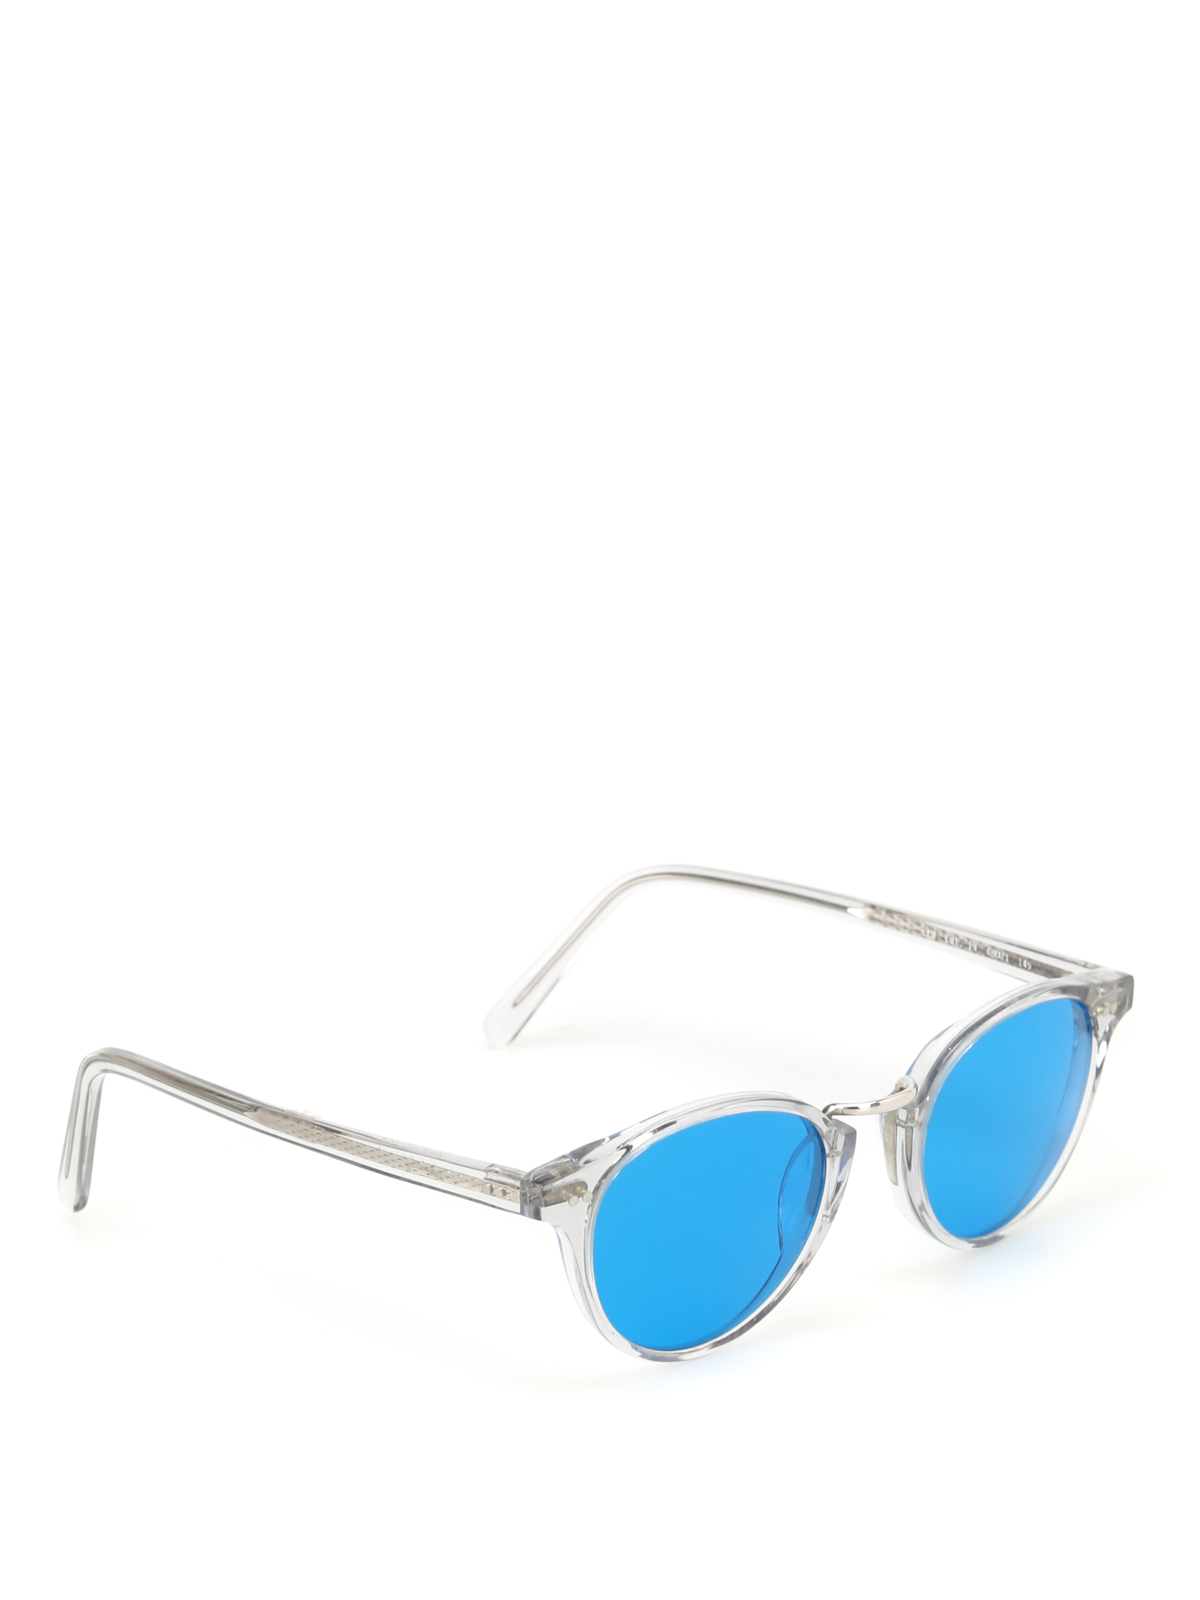 Gafas de sol Bob Sdrunk - Gafas De Sol - Leo - LEO iKRIX tienda online